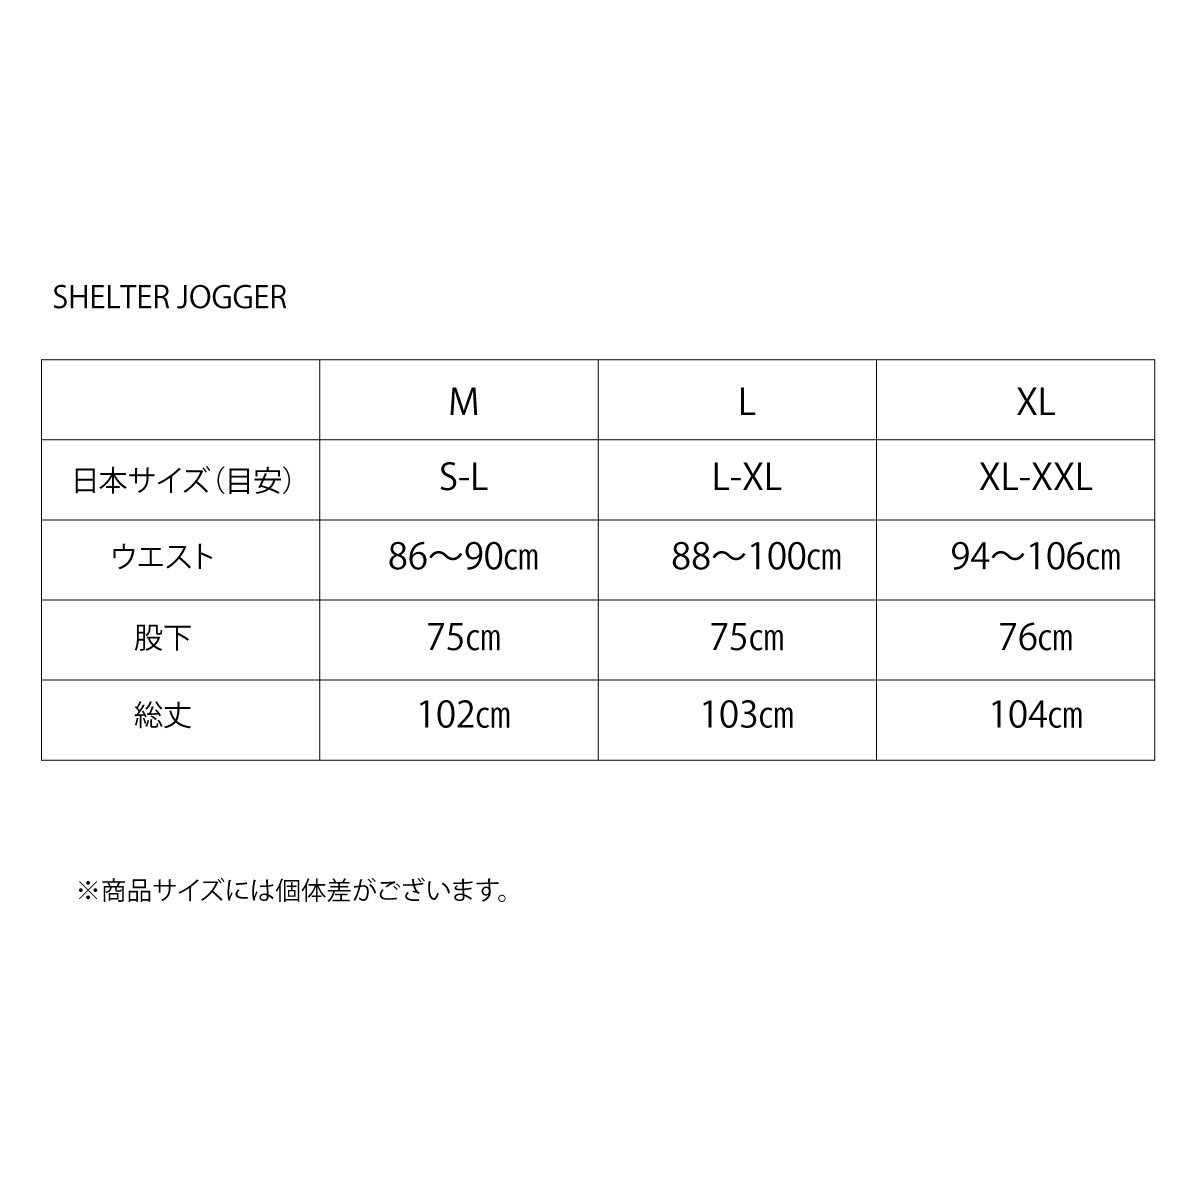 SHELTER JOGGER【Unisex】